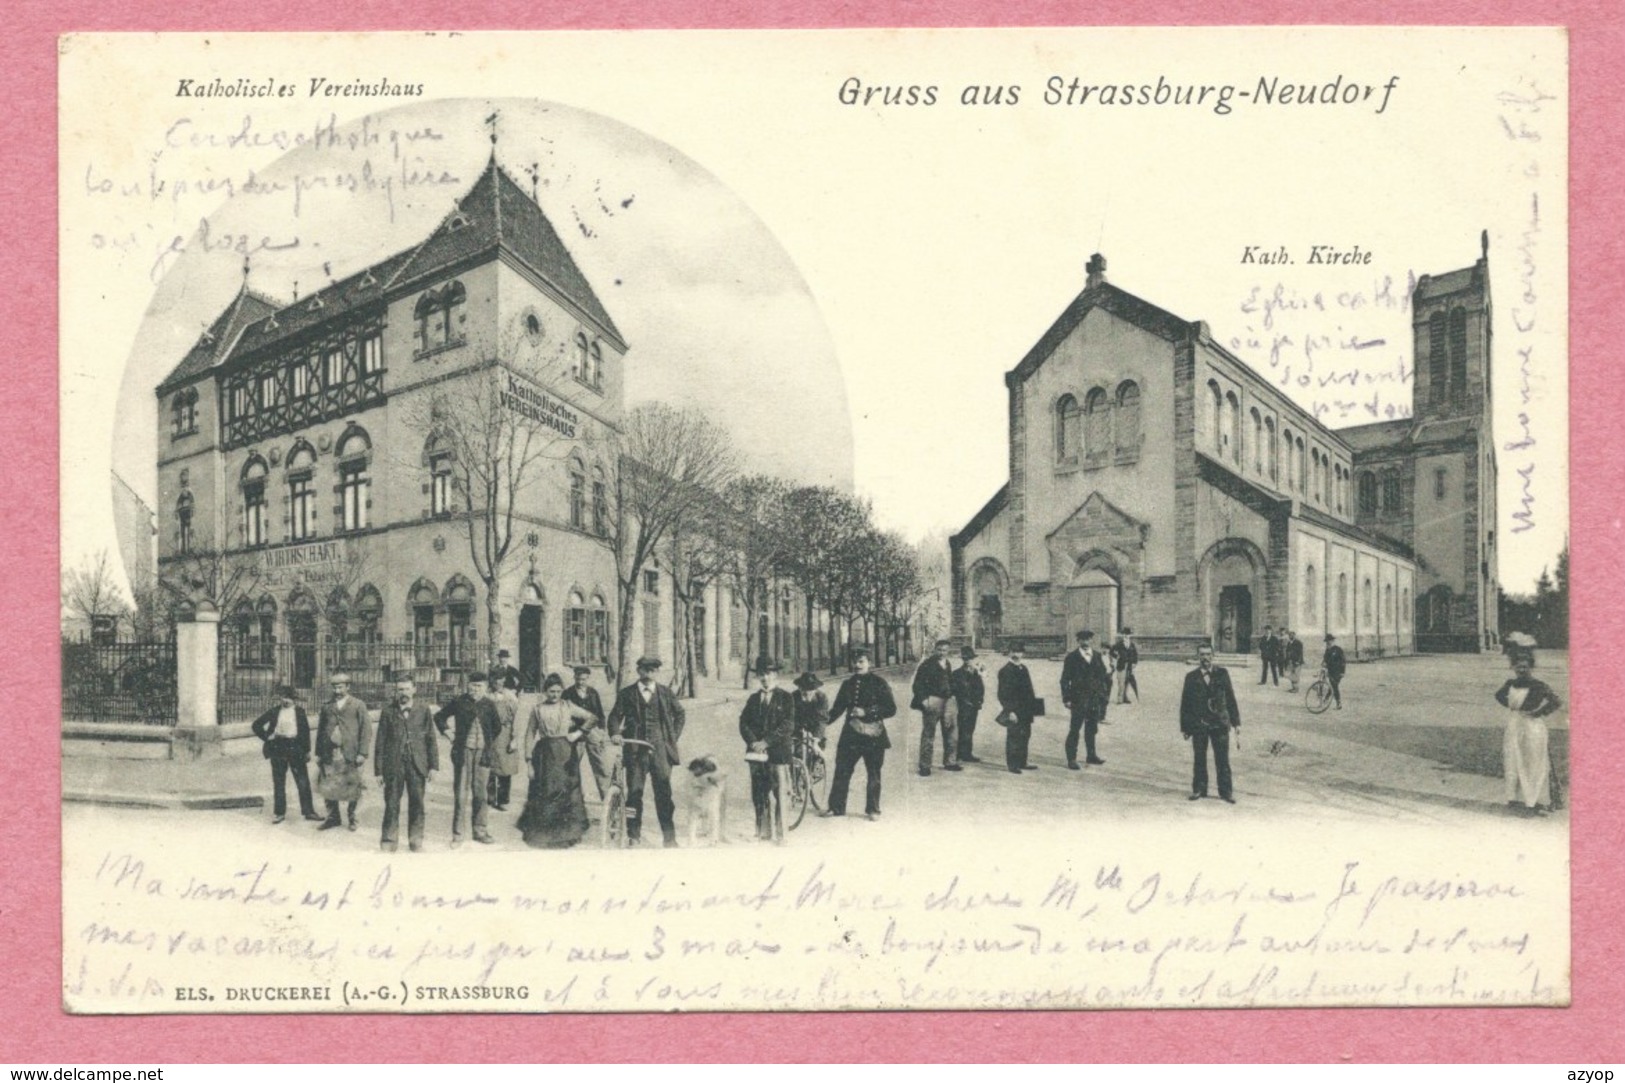 67 - STRASSBURG - STRASBOURG NEUDORF - Gruss Aus Neudorf - Katholisches Vereinshaus - Kirche - Strasbourg